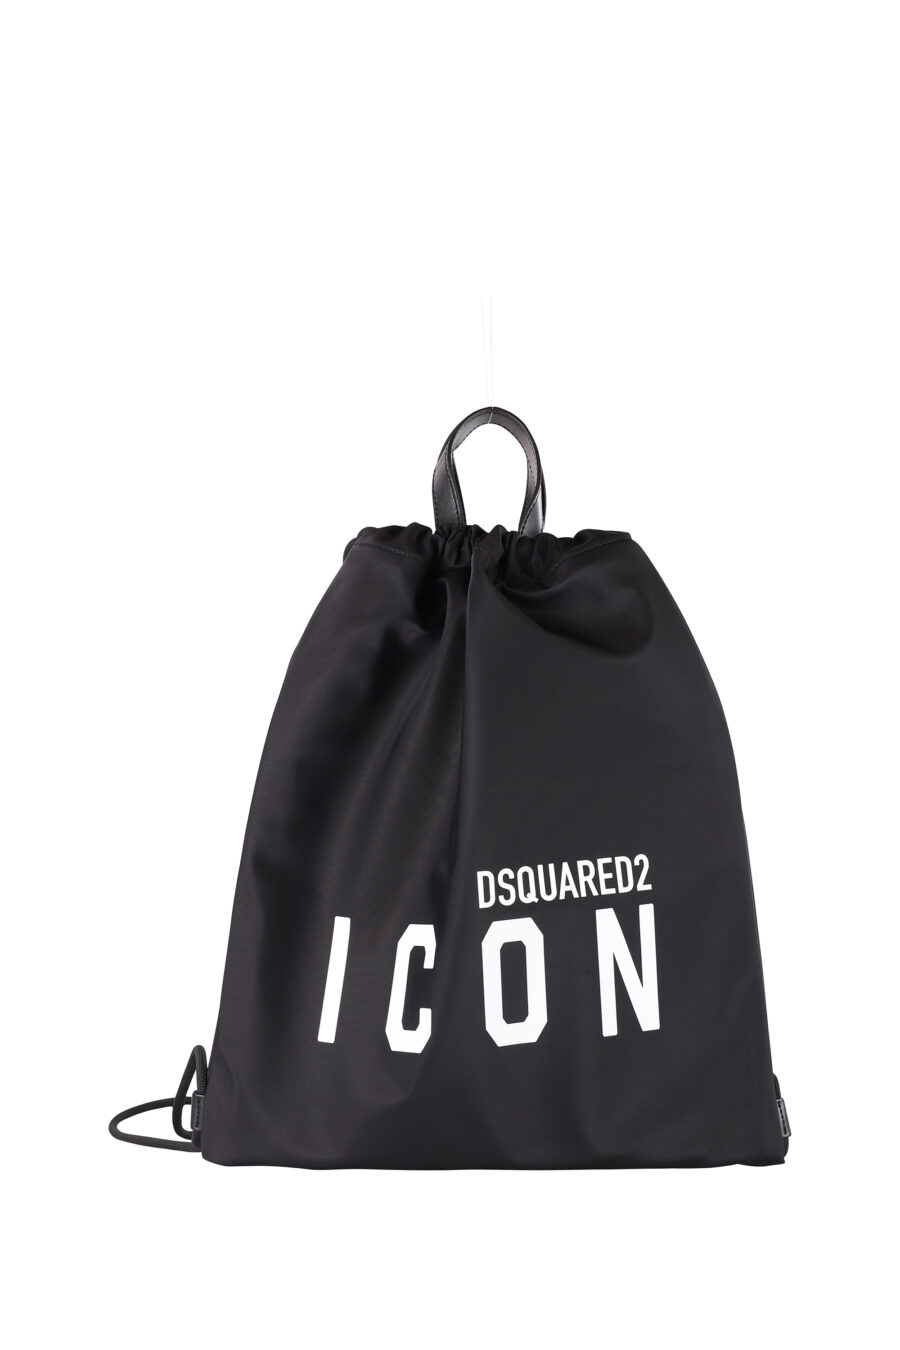 Mochila con cordones negra con logo "icon" - IMG 1336